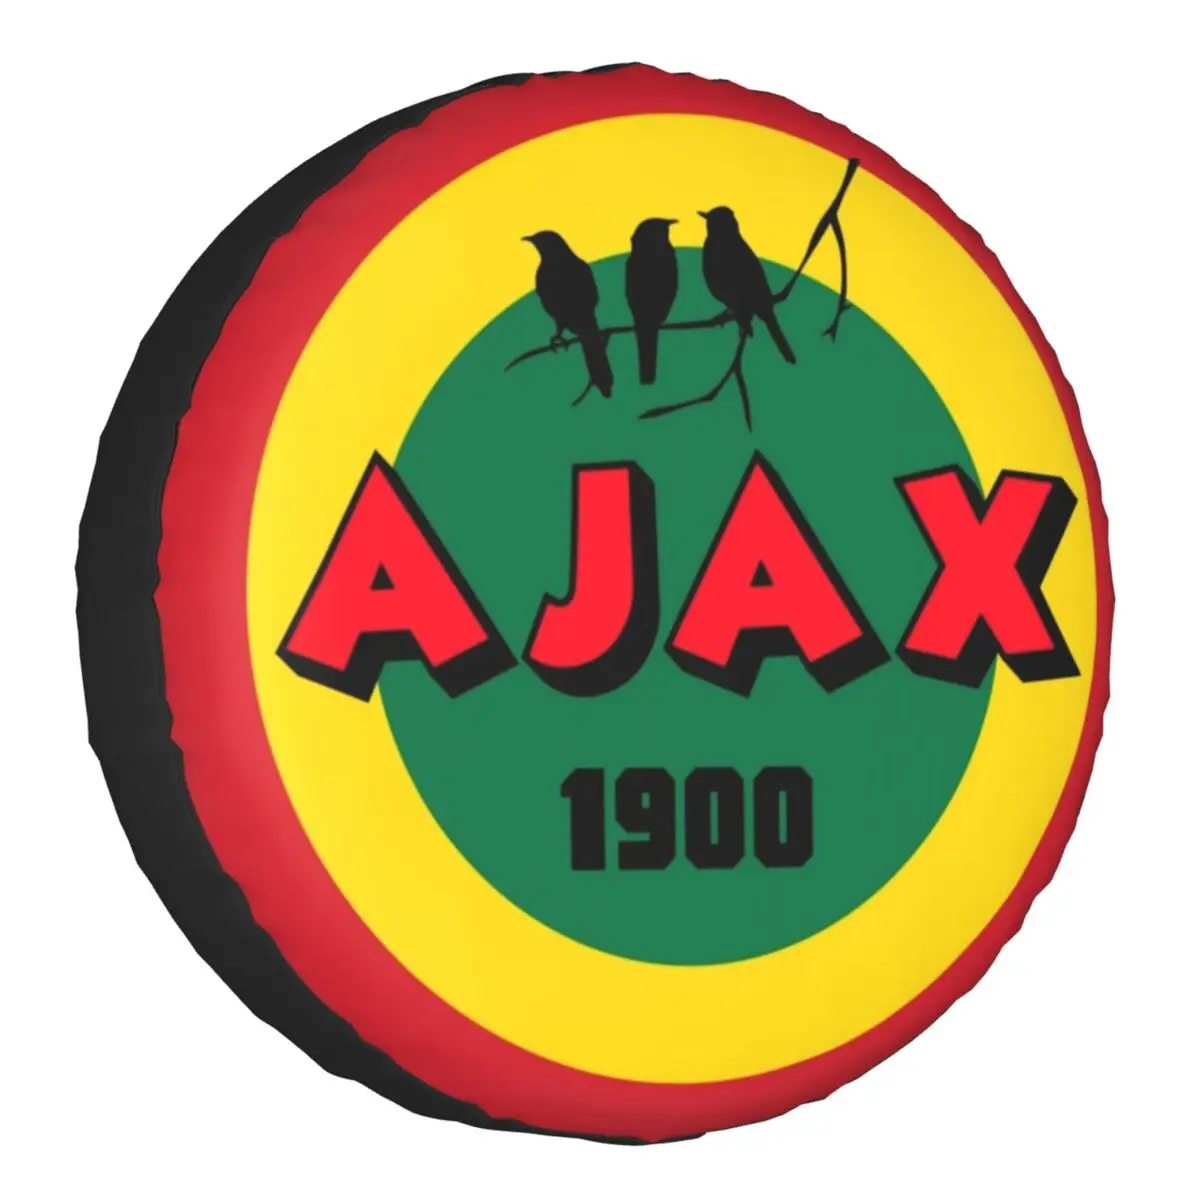 Özel Ajax 1900 Bob Marley futbol yedek lastik kılıfı Jeep üç kuş 4WD 4x4  SUV araba tekerlek koruyucular 14 "15" 16 "17" inç